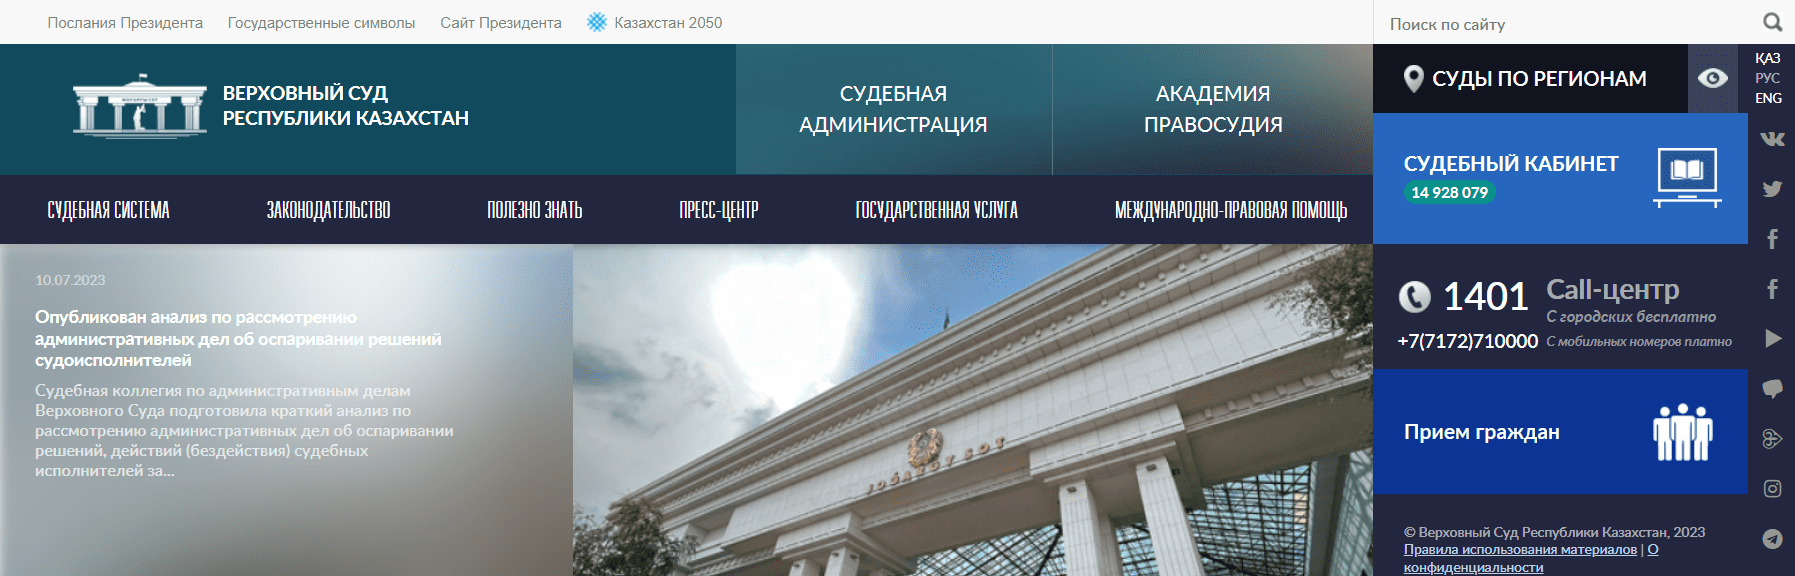 Верховный Суд Республики Казахстан (sud.gov.kz)